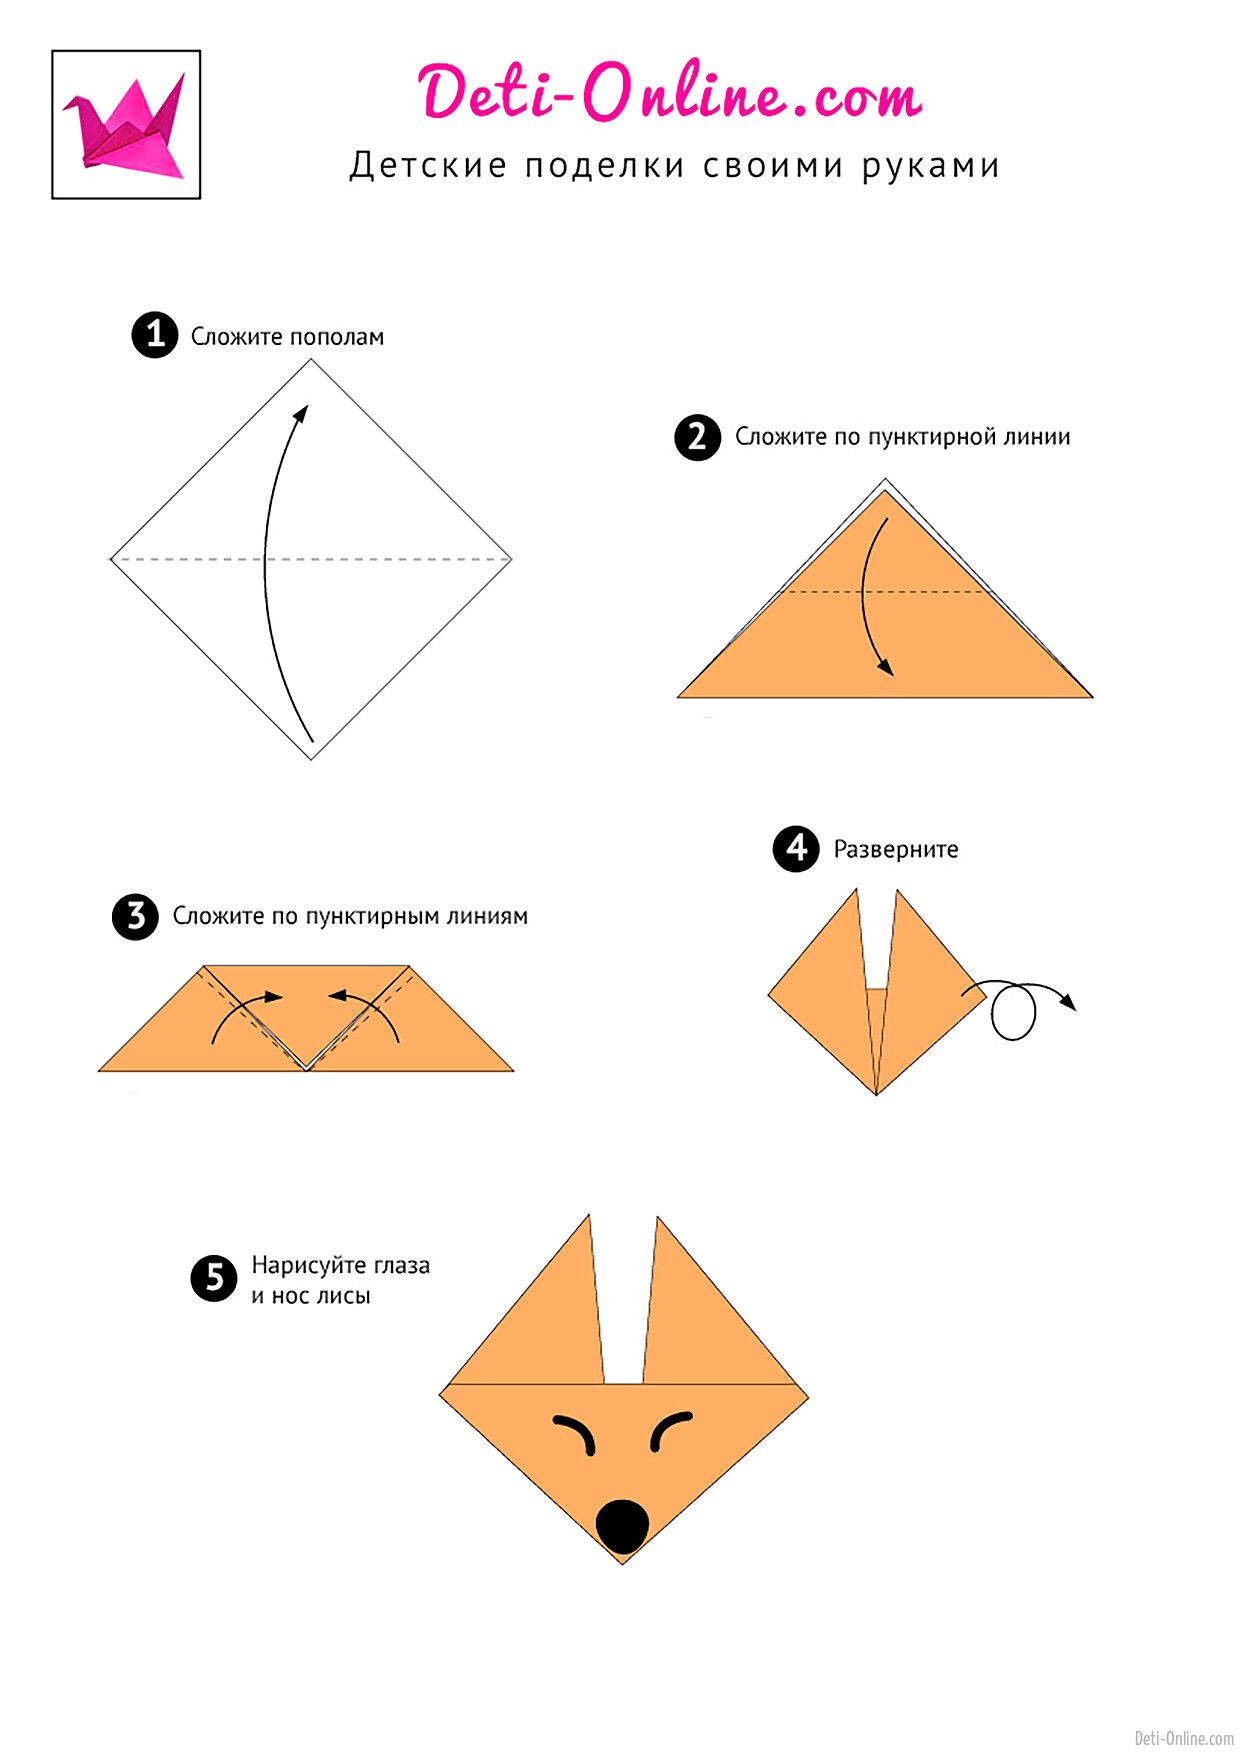 9 Идей простых поделок из бумаги своими руками Diy оригами поделки Канцелярия и лайфхаки для школы